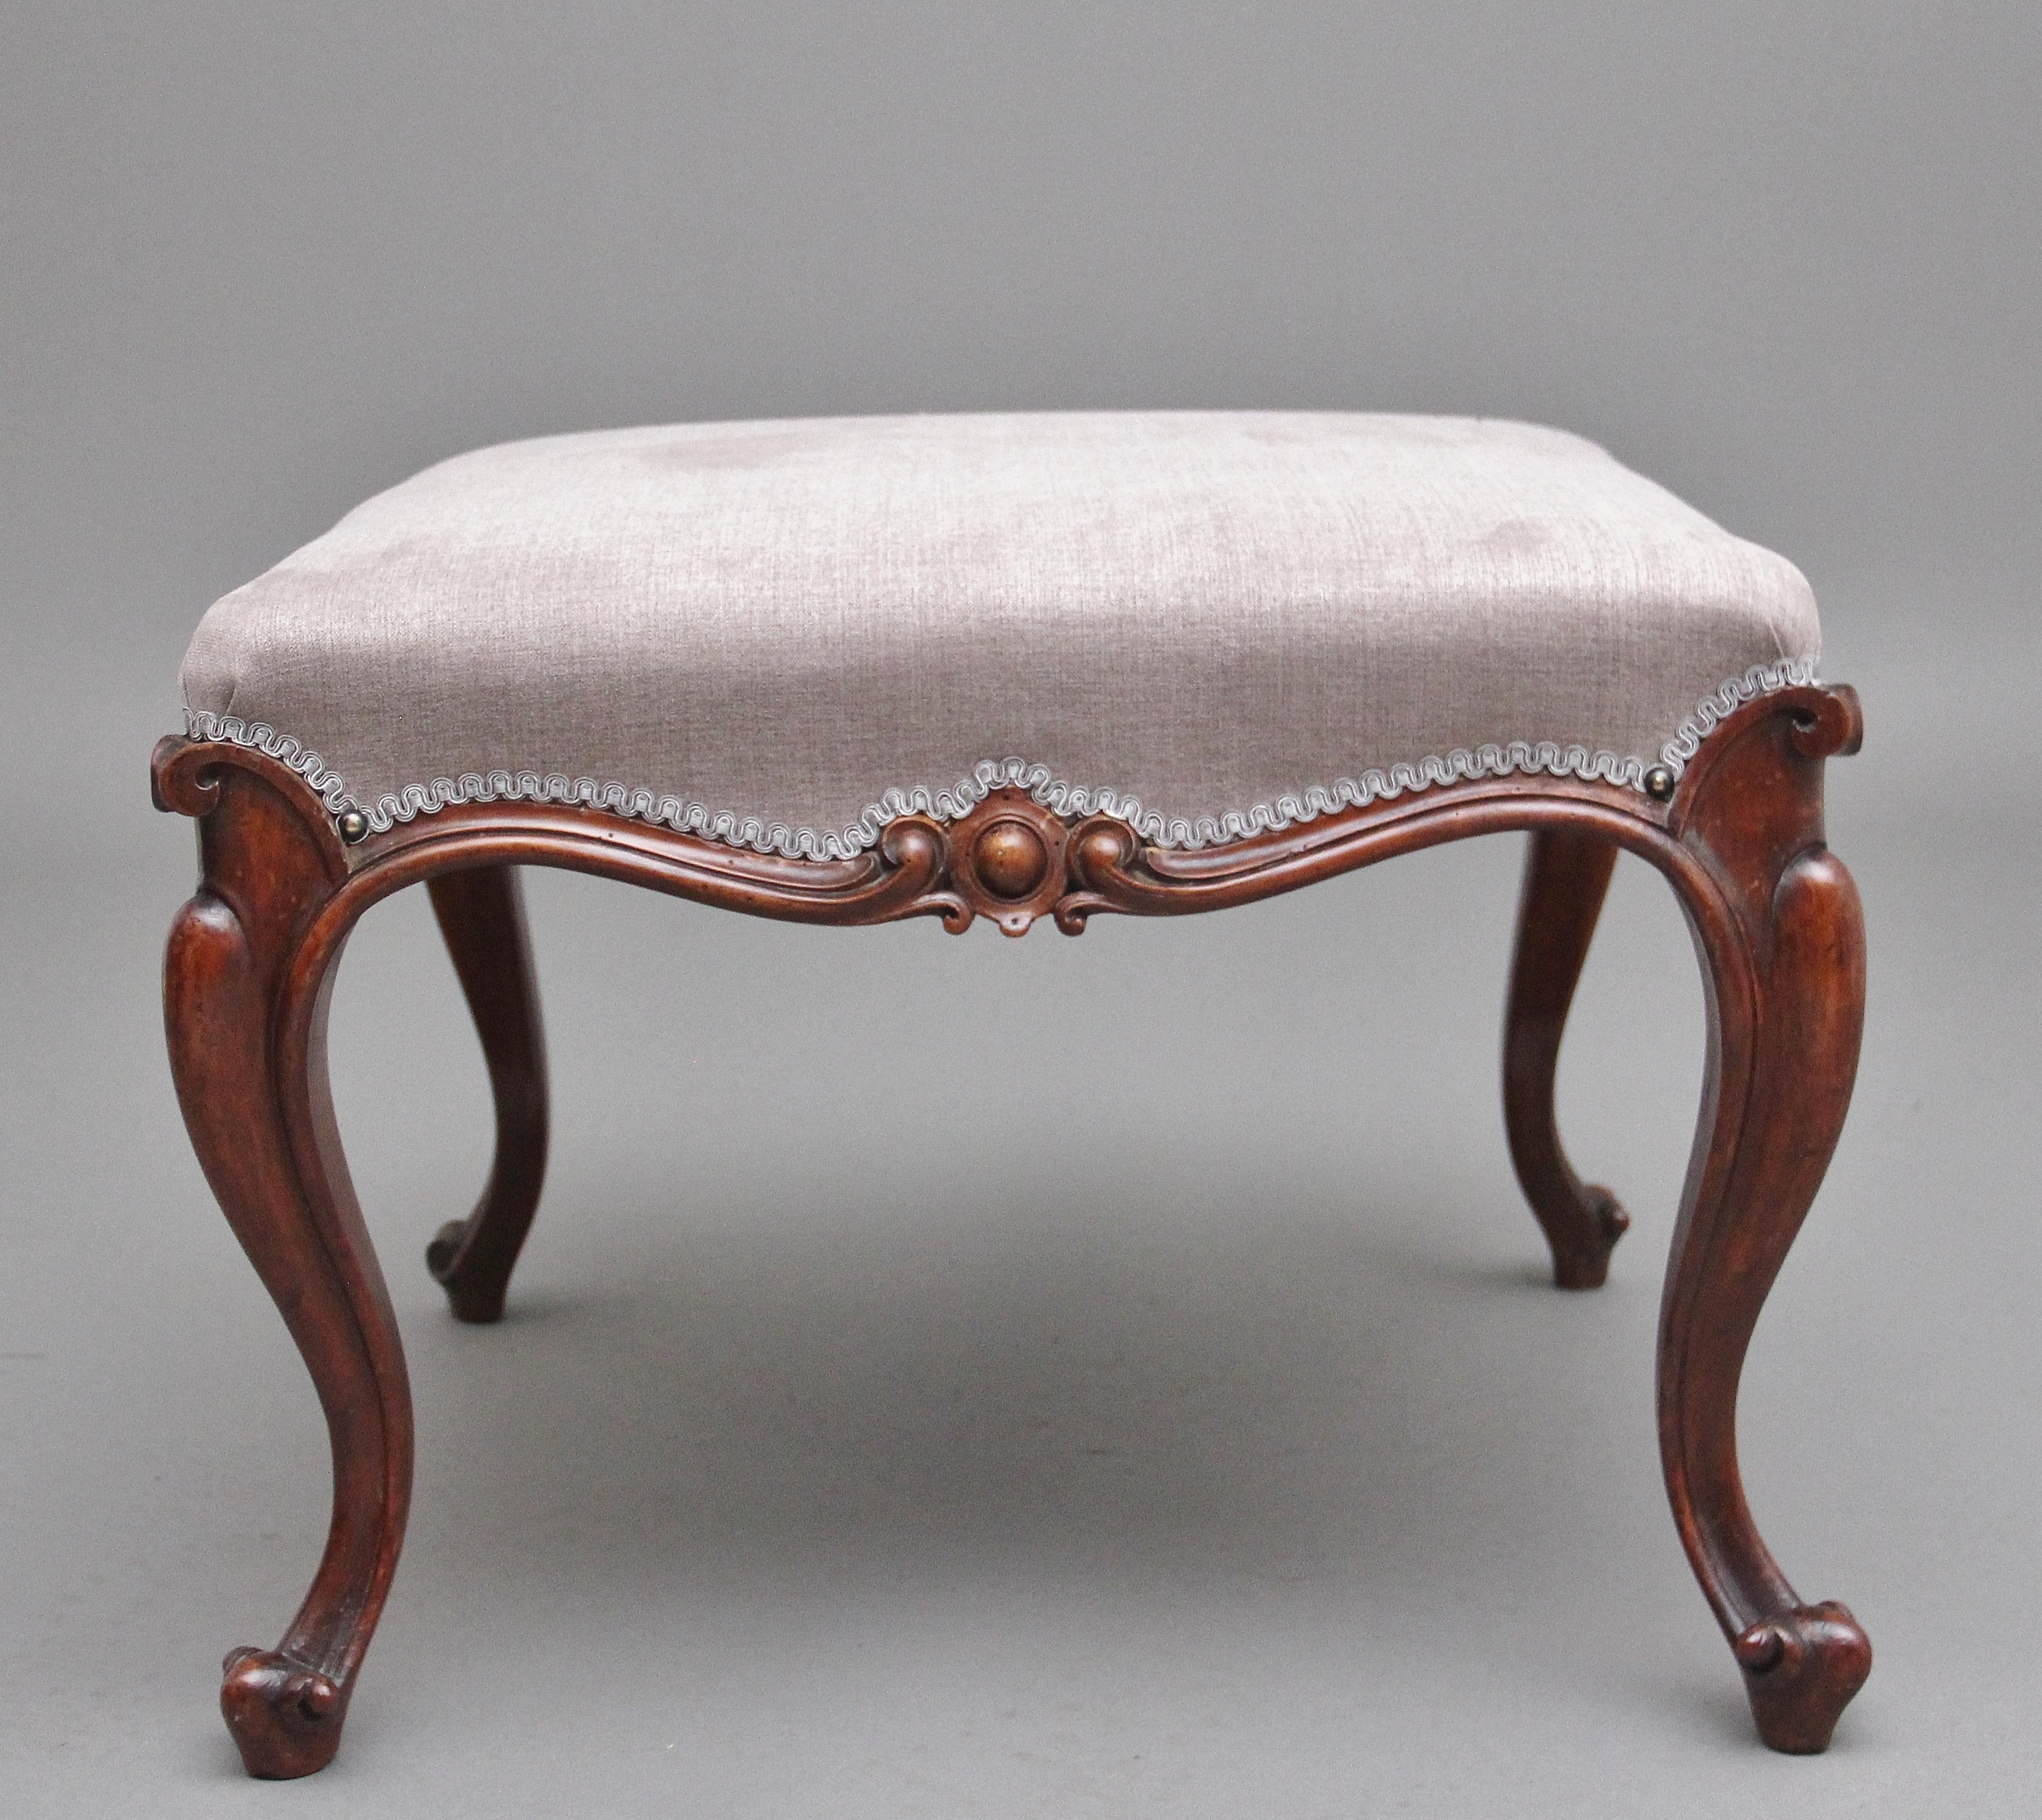 Hocker aus Nussbaumholz des 19. Jahrhunderts mit einem kürzlich neu gepolsterten grauen Stoff über dem Sitz, der mit einer dekorativen Schnörkelverzierung versehen ist, und einem blattgeschnitzten Bogenrand auf Cabriole-Beinen.  Circa 1860.
